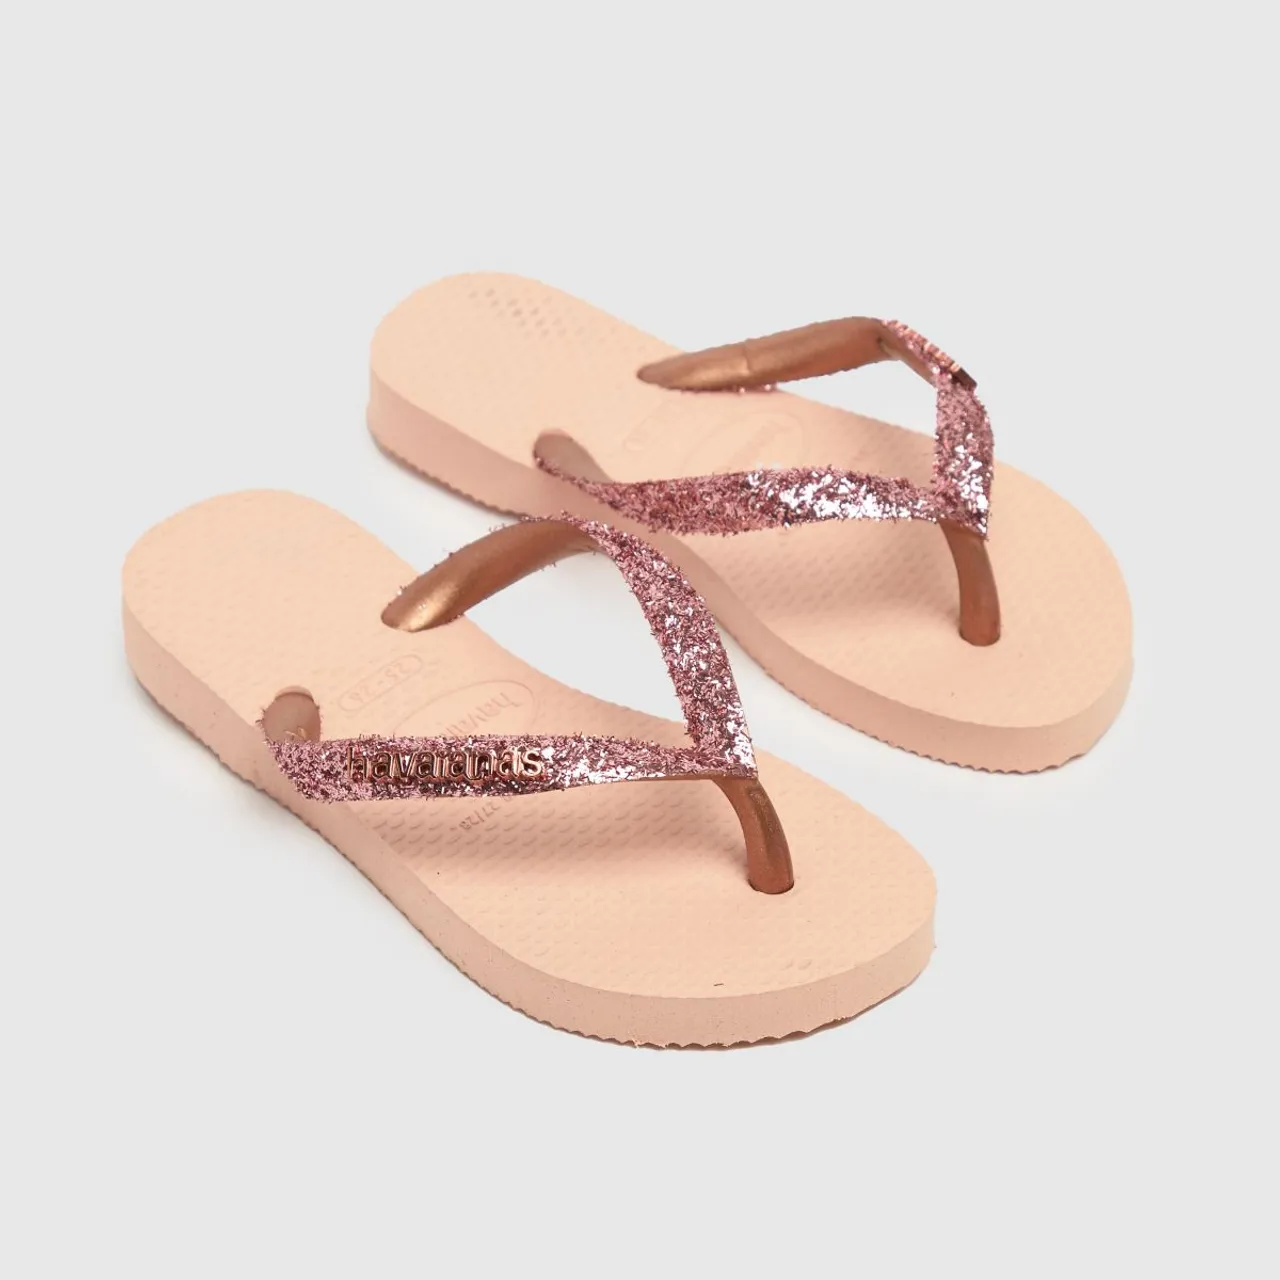 Havaianas Pink Slim Glitter Ii Girls Junior Sandals